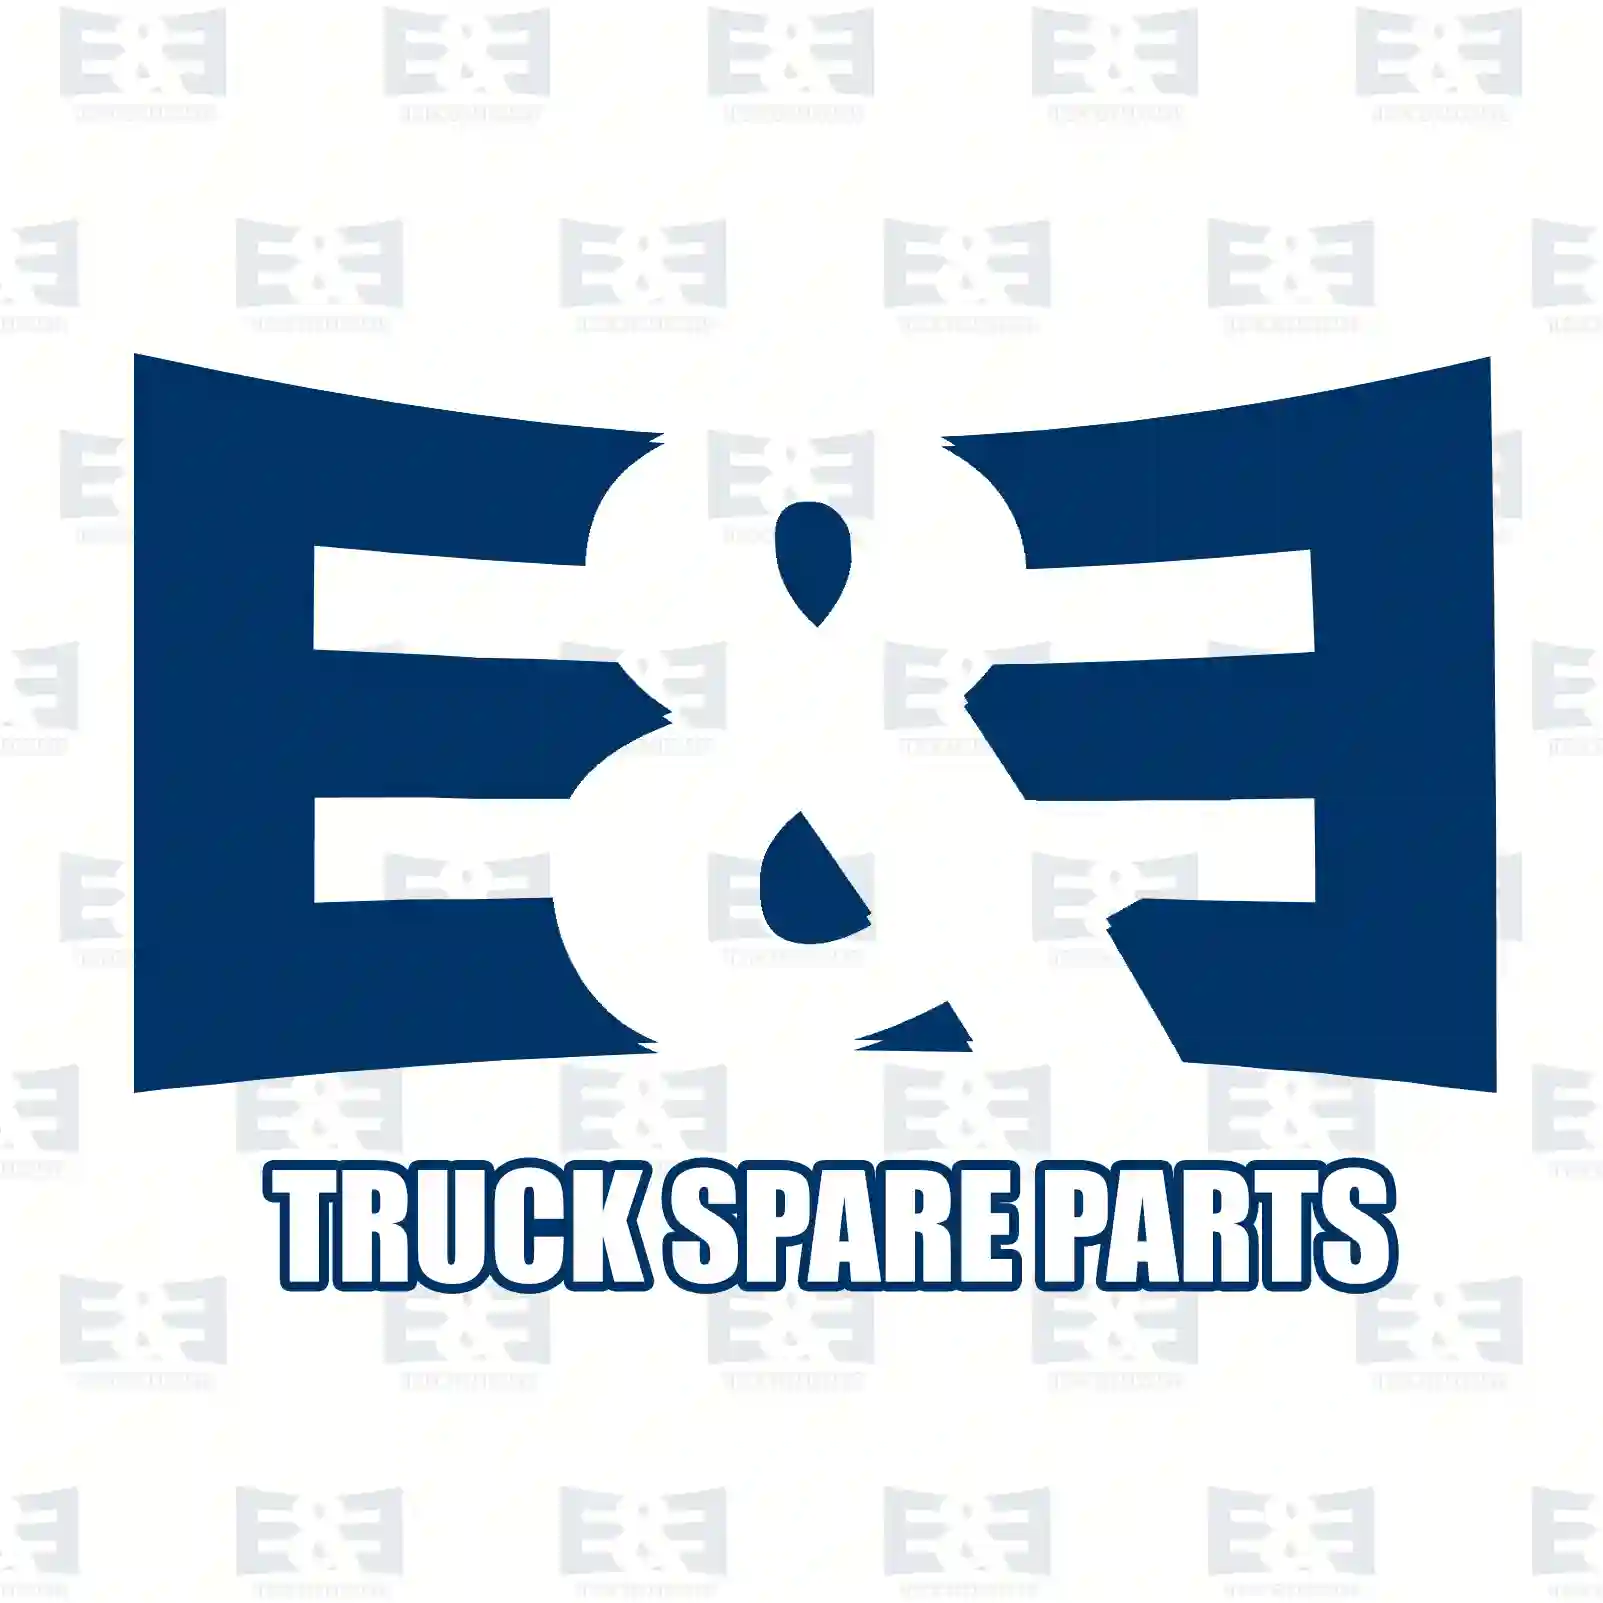 Propeller shaft, 2E2276876, 20476720 ||  2E2276876 E&E Truck Spare Parts | Truck Spare Parts, Auotomotive Spare Parts Propeller shaft, 2E2276876, 20476720 ||  2E2276876 E&E Truck Spare Parts | Truck Spare Parts, Auotomotive Spare Parts